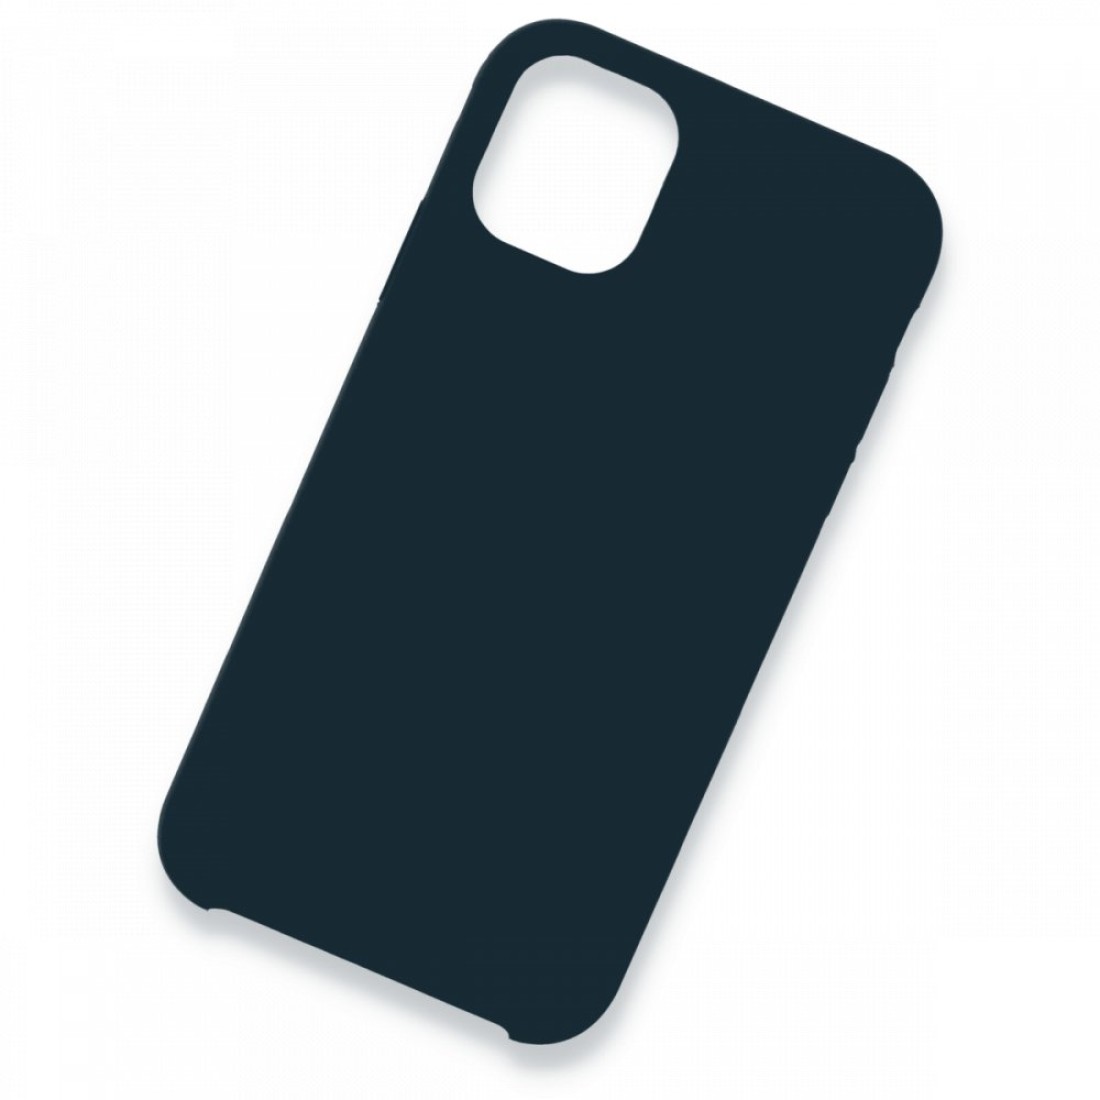 Apple iPhone 11 Pro Max Kılıf Lansman Legant Silikon - Gece Mavisi